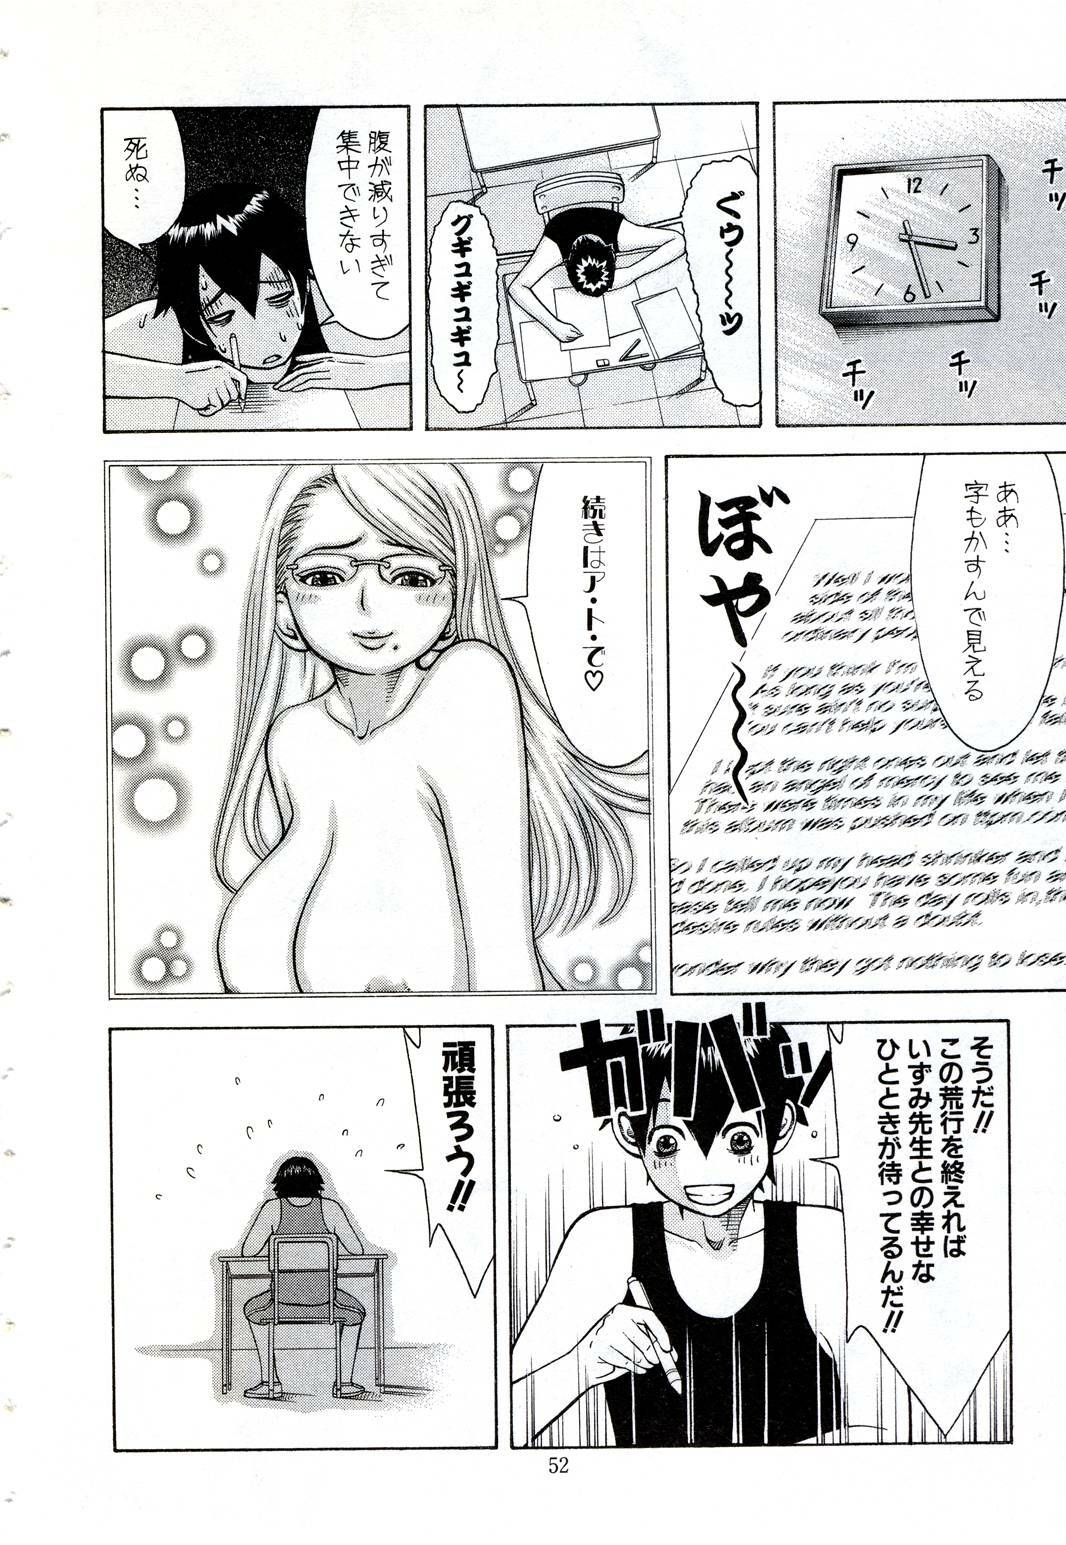 [Nakamura Sakyou] OnnaKyoshi Izumi page 49 full